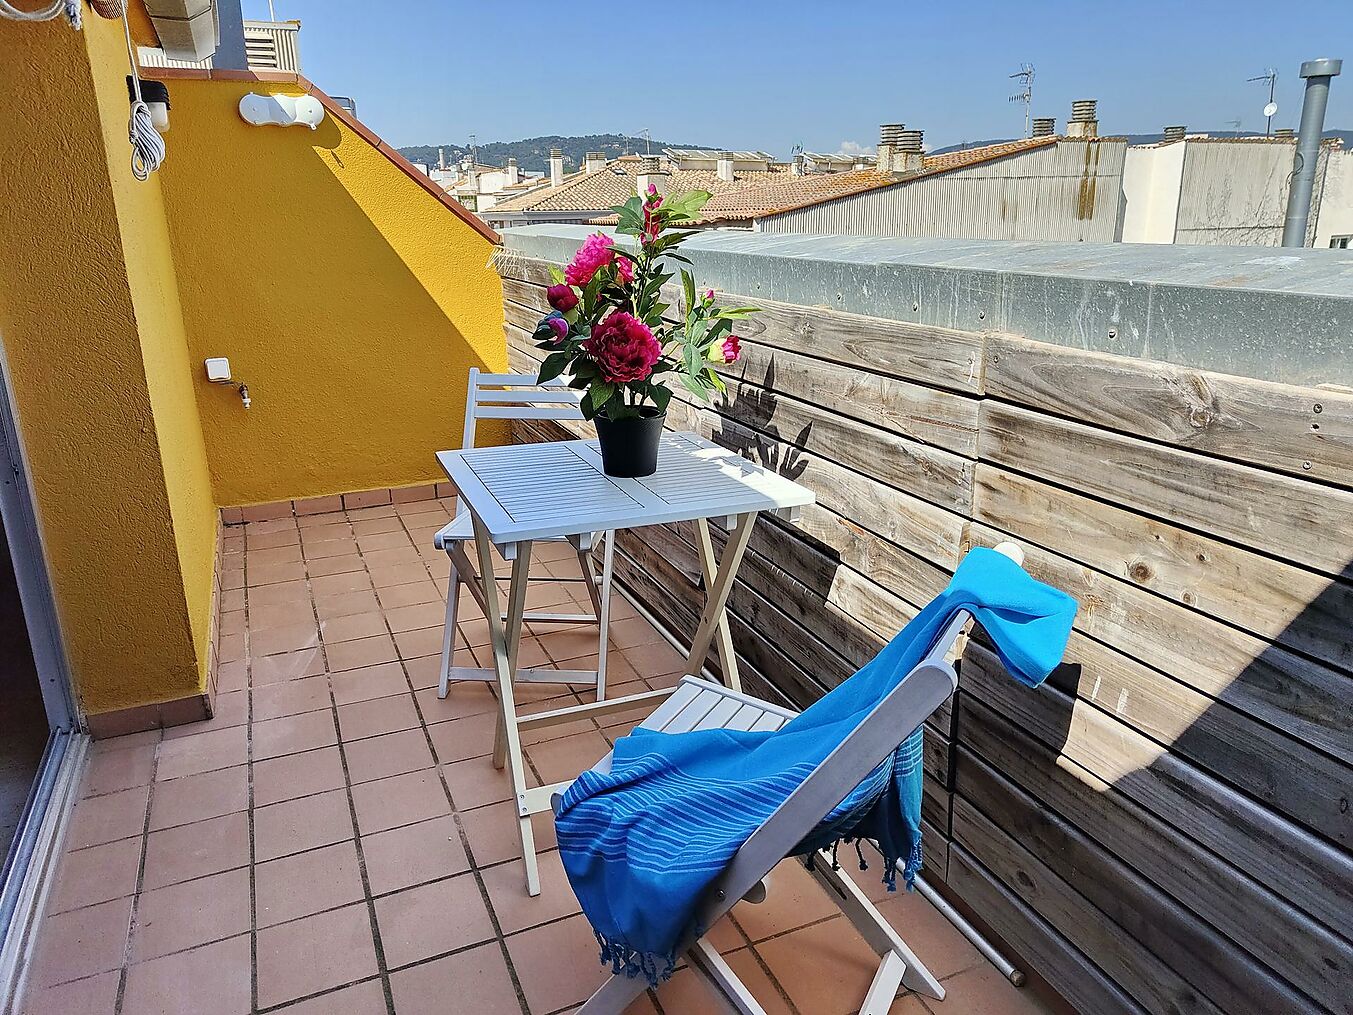 Apartament tipus dúplex situat a segona línia de mar al centre de Sant Antoni